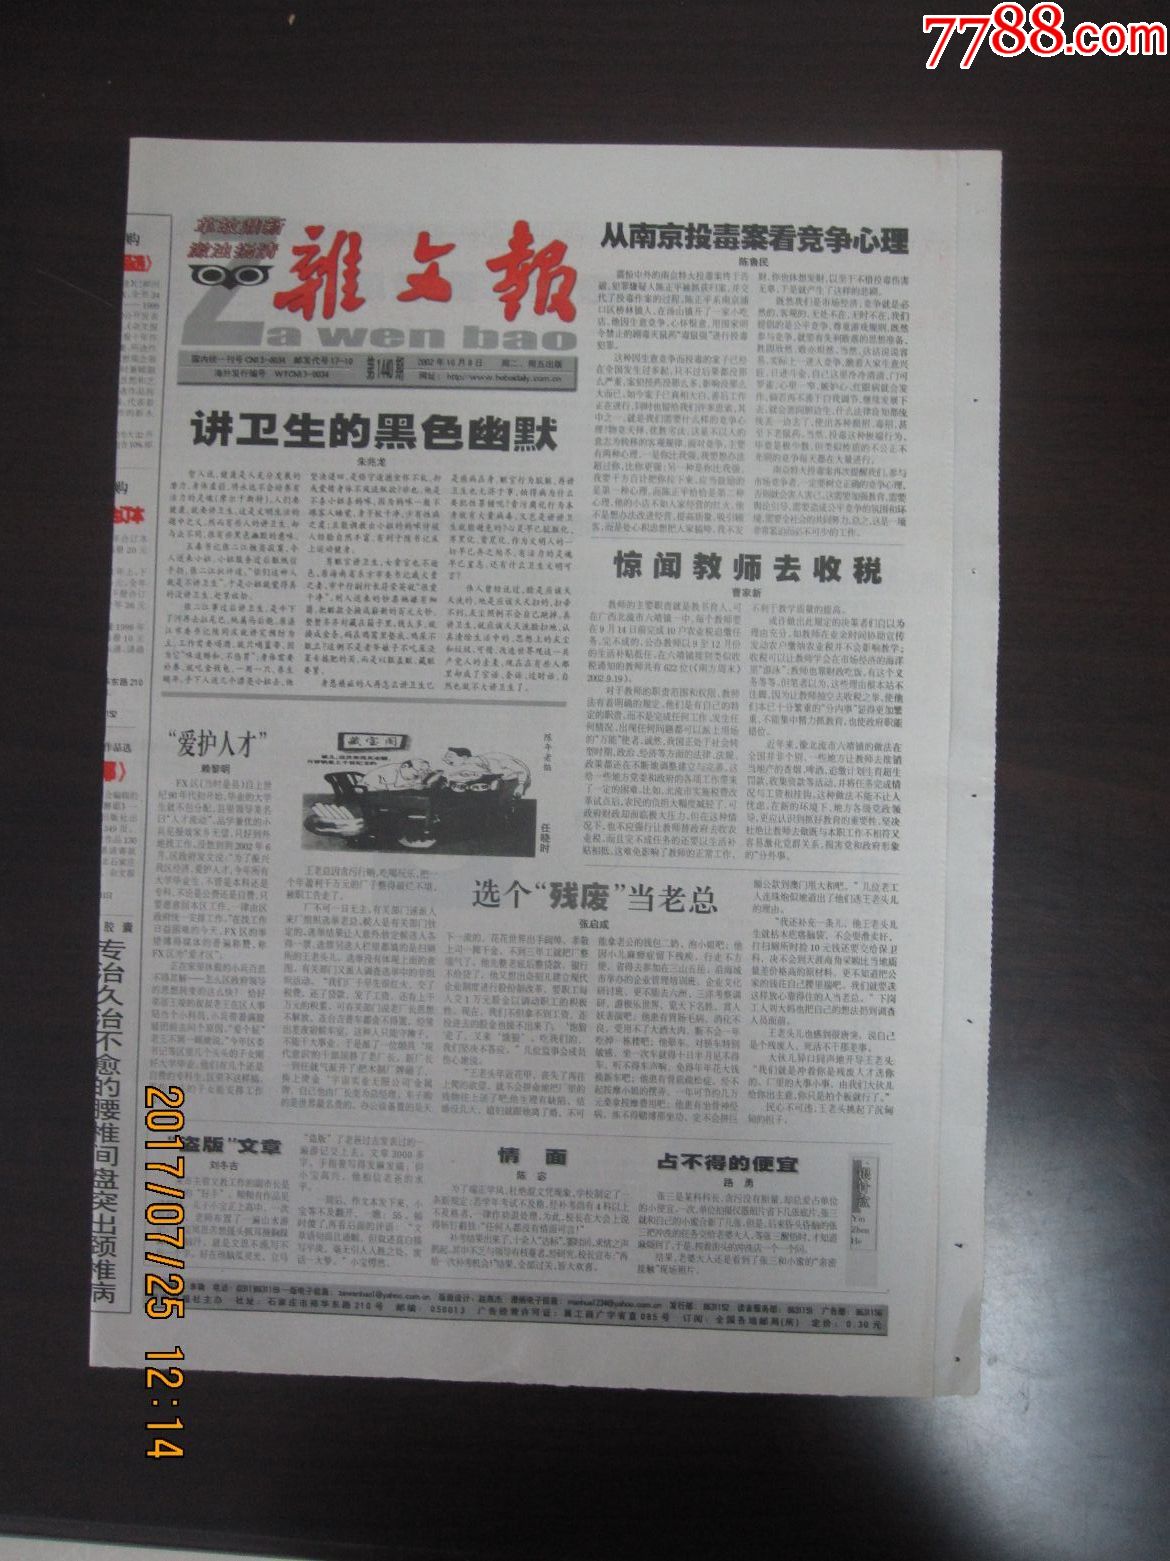 2002年10月8日《杂文报》(从南京投毒案看竞